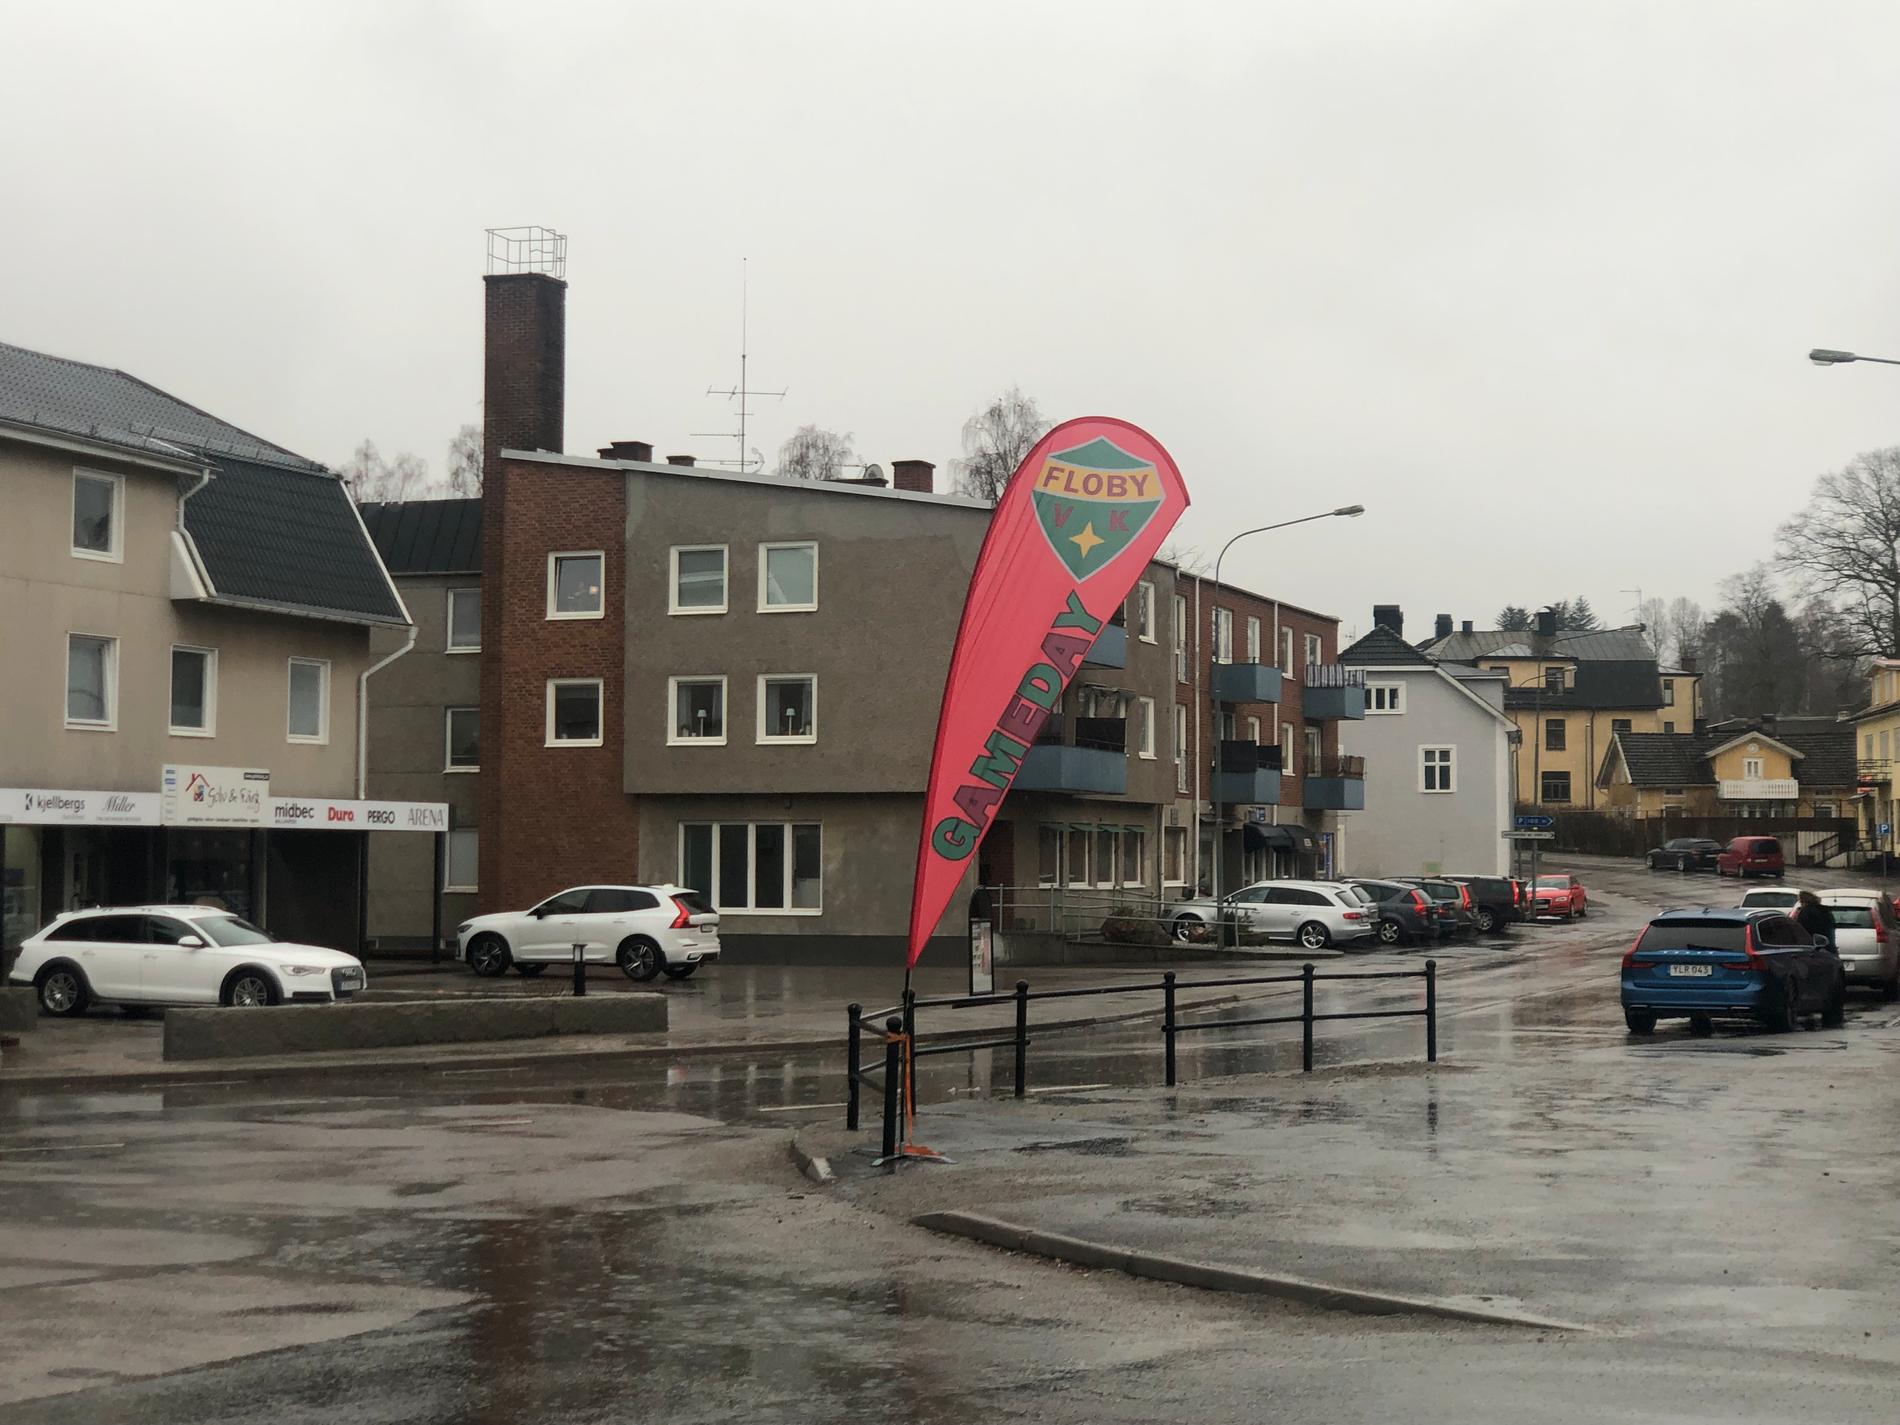 Den dyngsura flaggan vid stationen berättar att det är matchdag i Floby. Hylte/Halmstad är på besök för att spela den andra matchen i SM-semifinalserien.